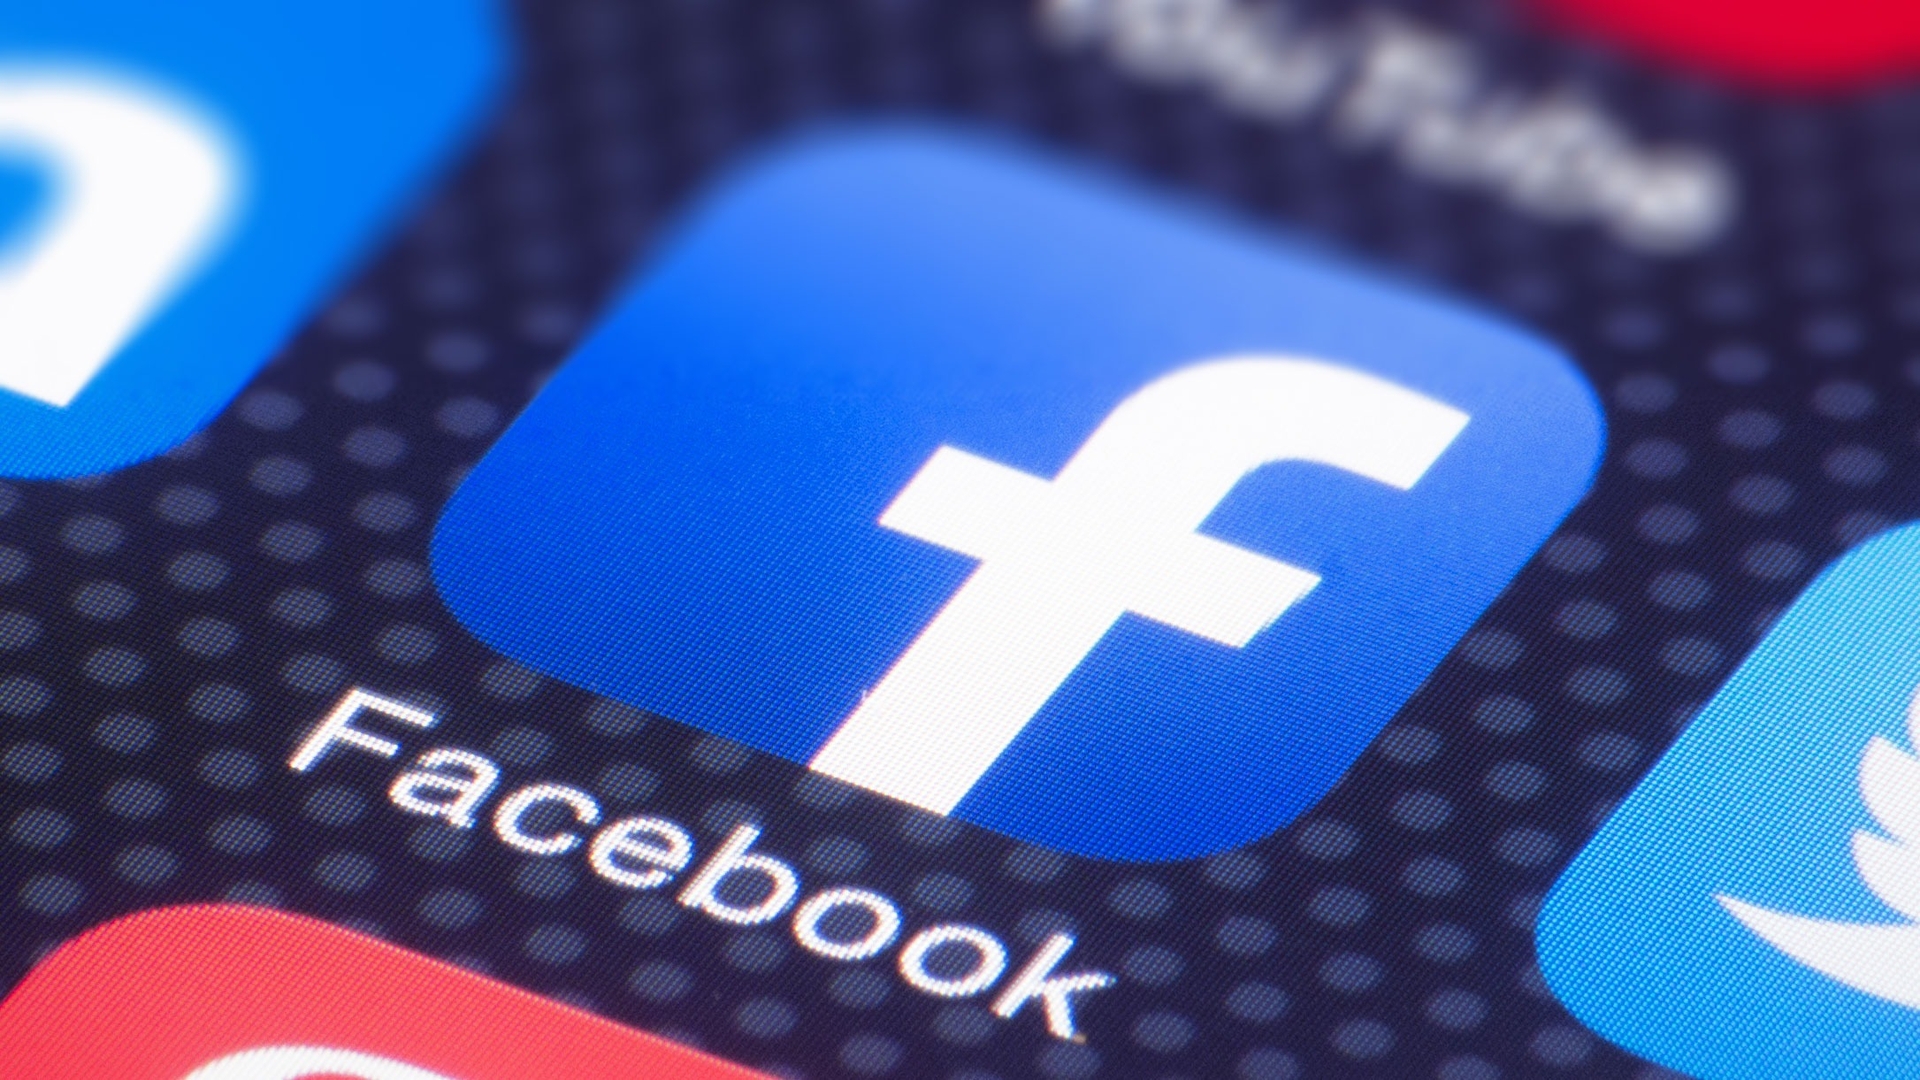 Dans cet article, nous allons expliquer comment changer le nom du profil sur Facebook, afin que vous puissiez mettre à jour votre surnom Facebook si vous le souhaitez.